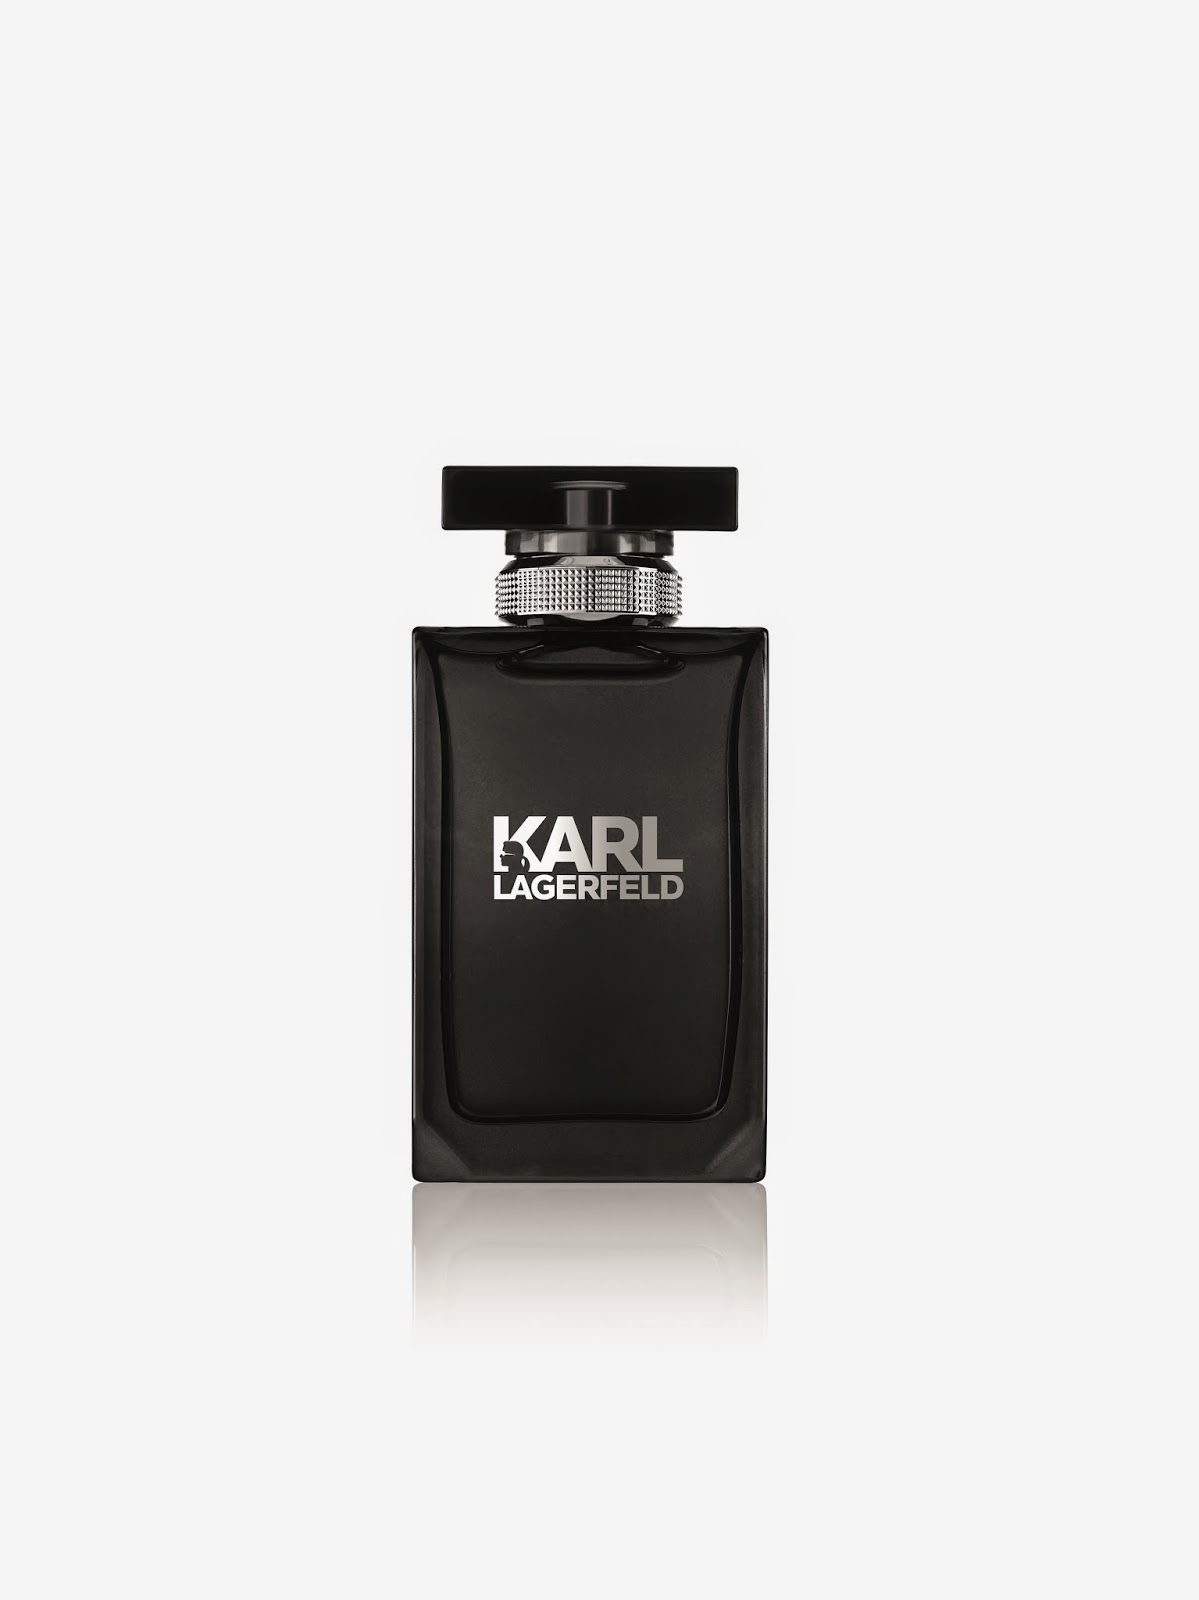 Лагерфельд парфюм мужской. Karl Lagerfeld man EDT 100 ml Tester.